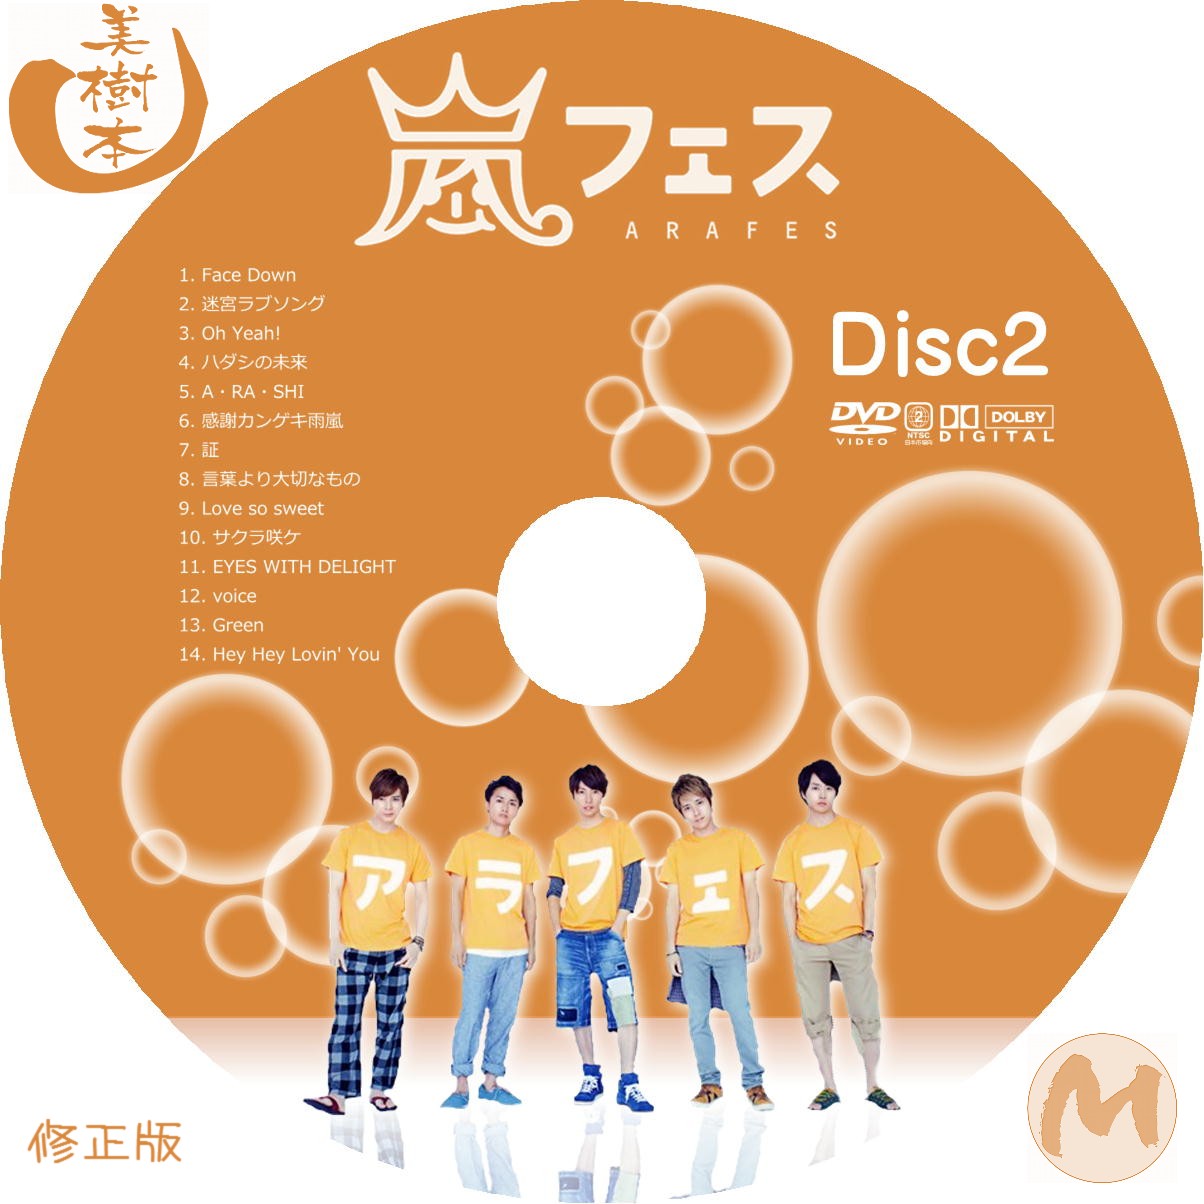 嵐「嵐フェス2013,アラフェス2013」DVD 初回限定盤 - ブルーレイ